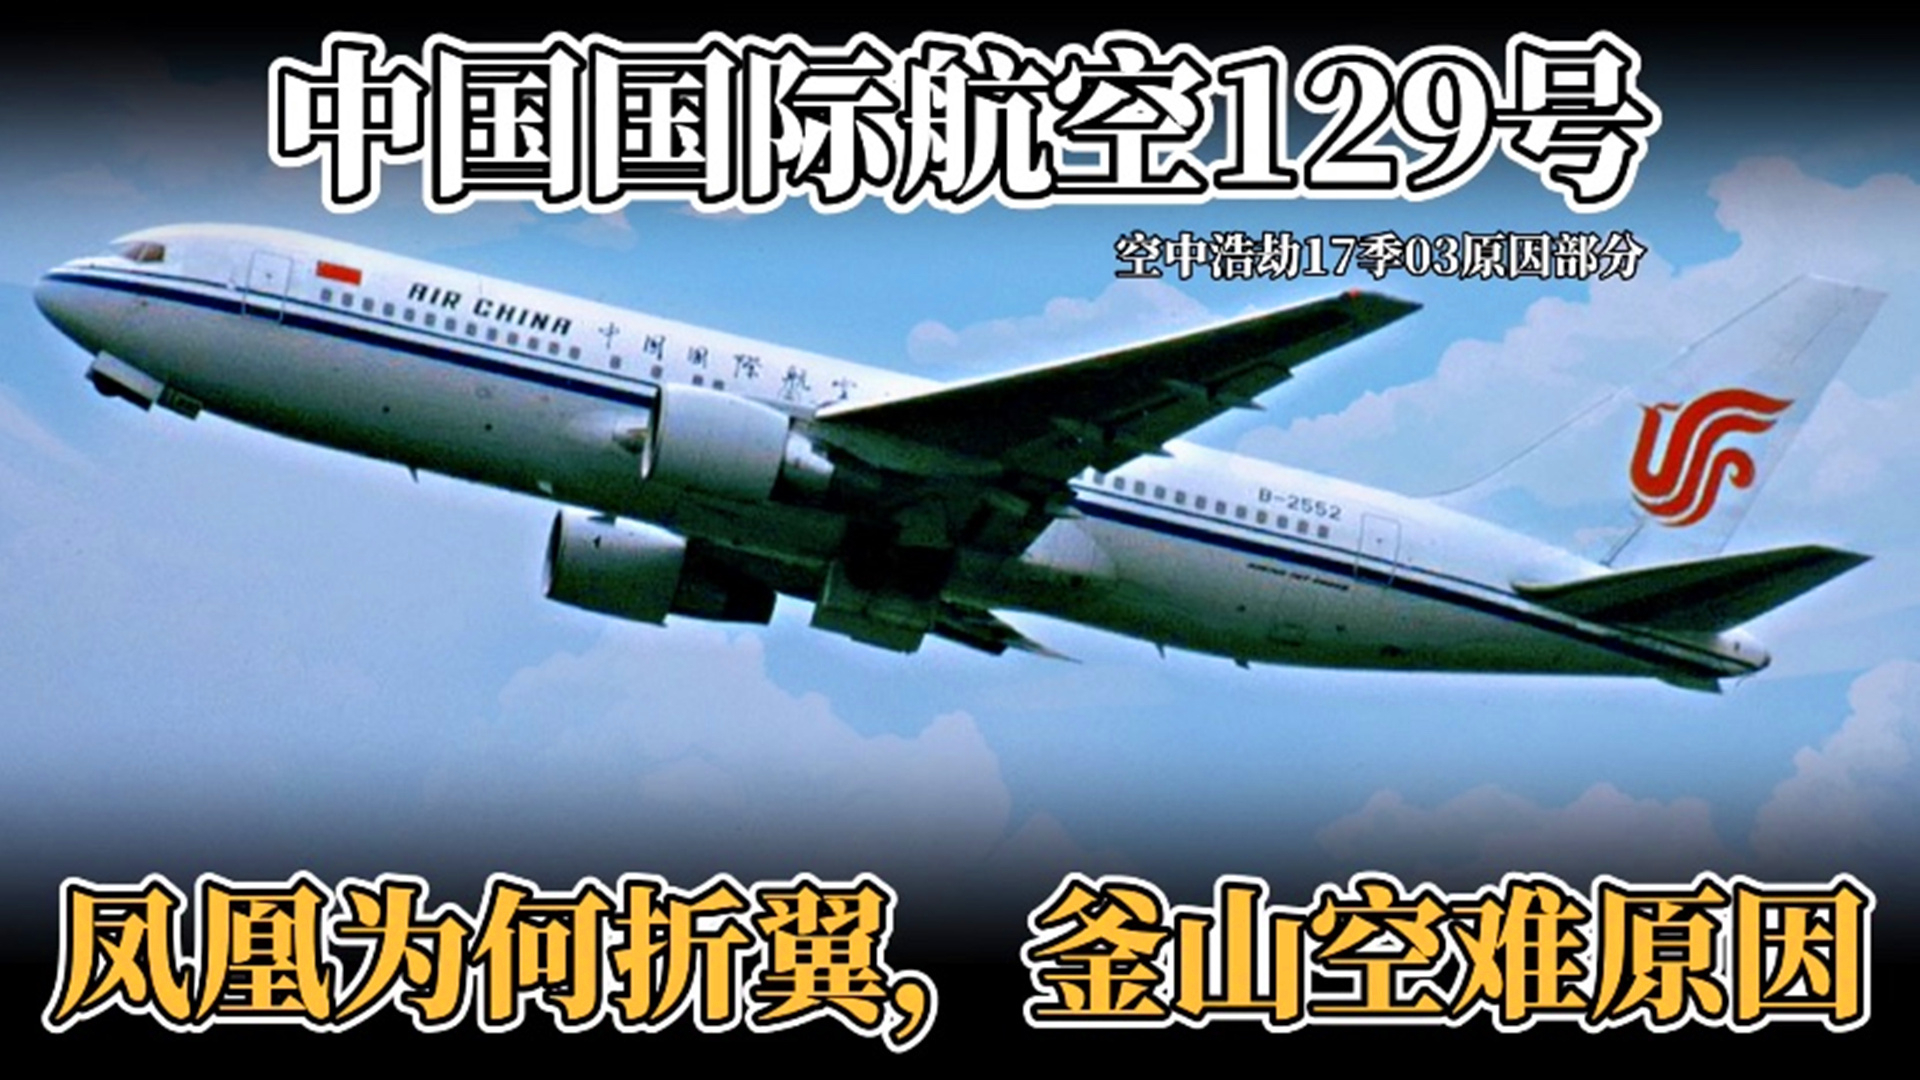 中国国际航空129号釜山空难原因,飞机正常可控却意外撞山坠毁《空中